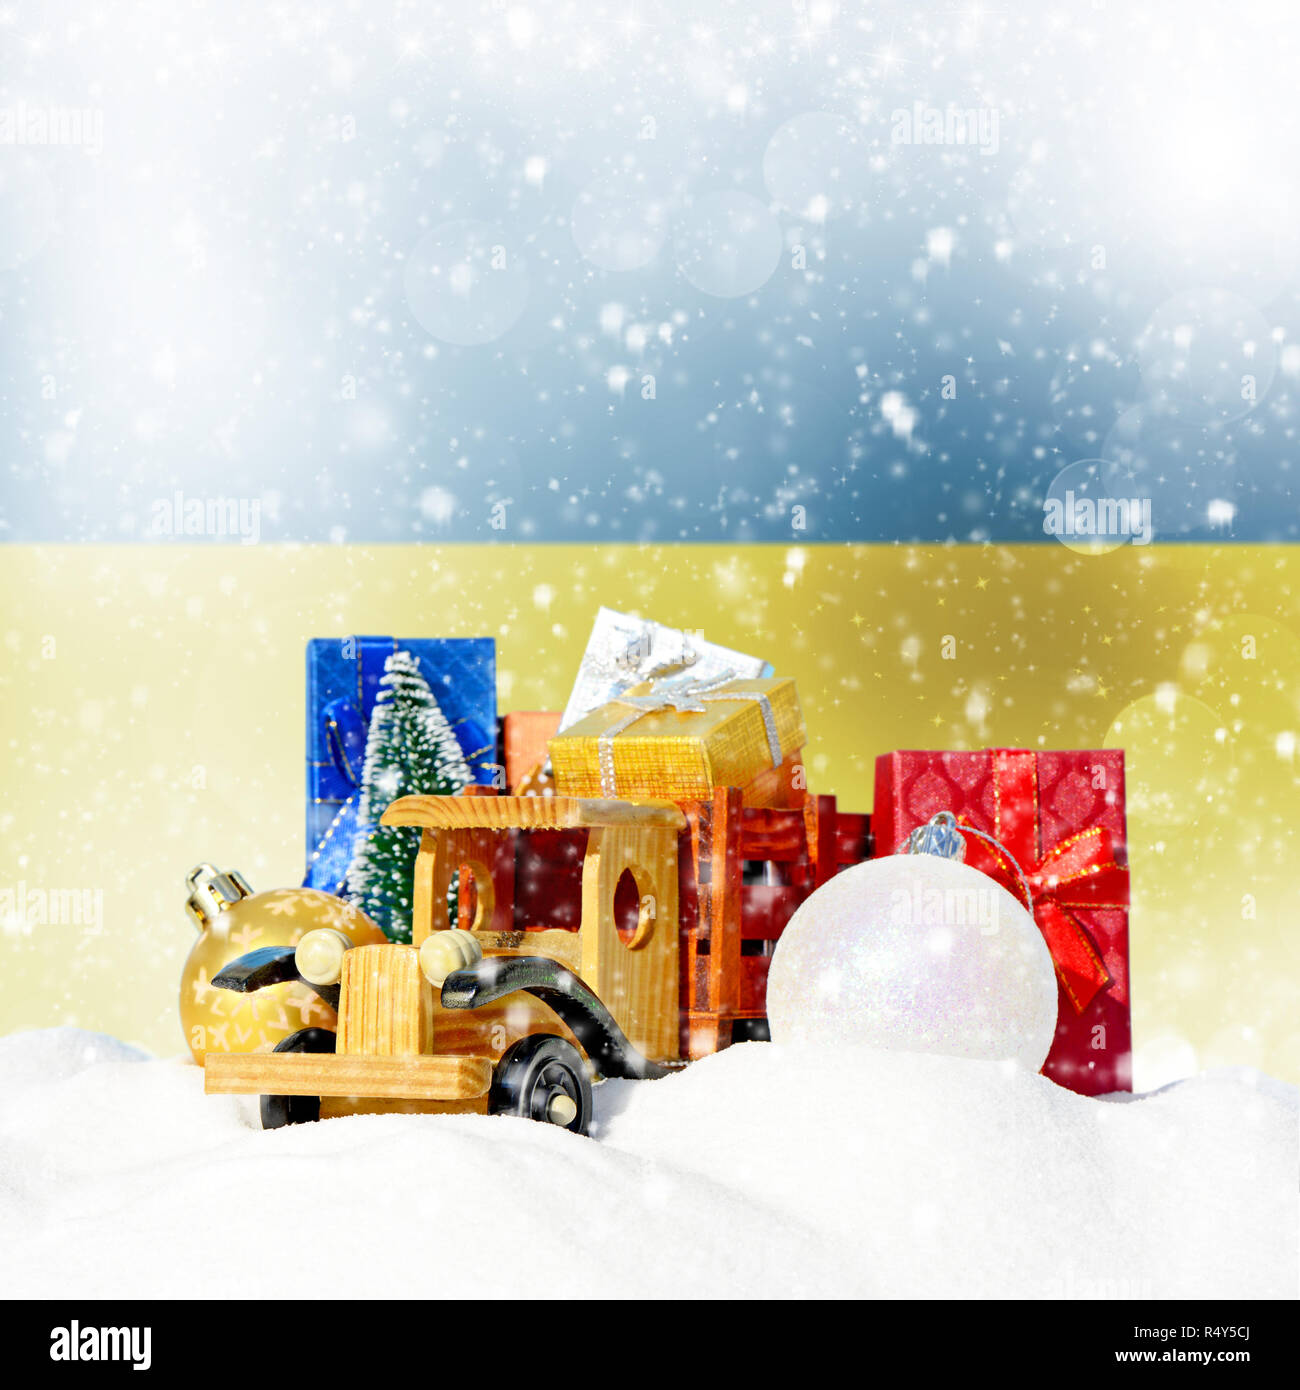 Weihnachten Hintergrund. Spielzeug-LKW mit Geschenken, Neues Jahr Tanne, Kugeln im Schneetreiben und ukrainische Flagge Stockfoto